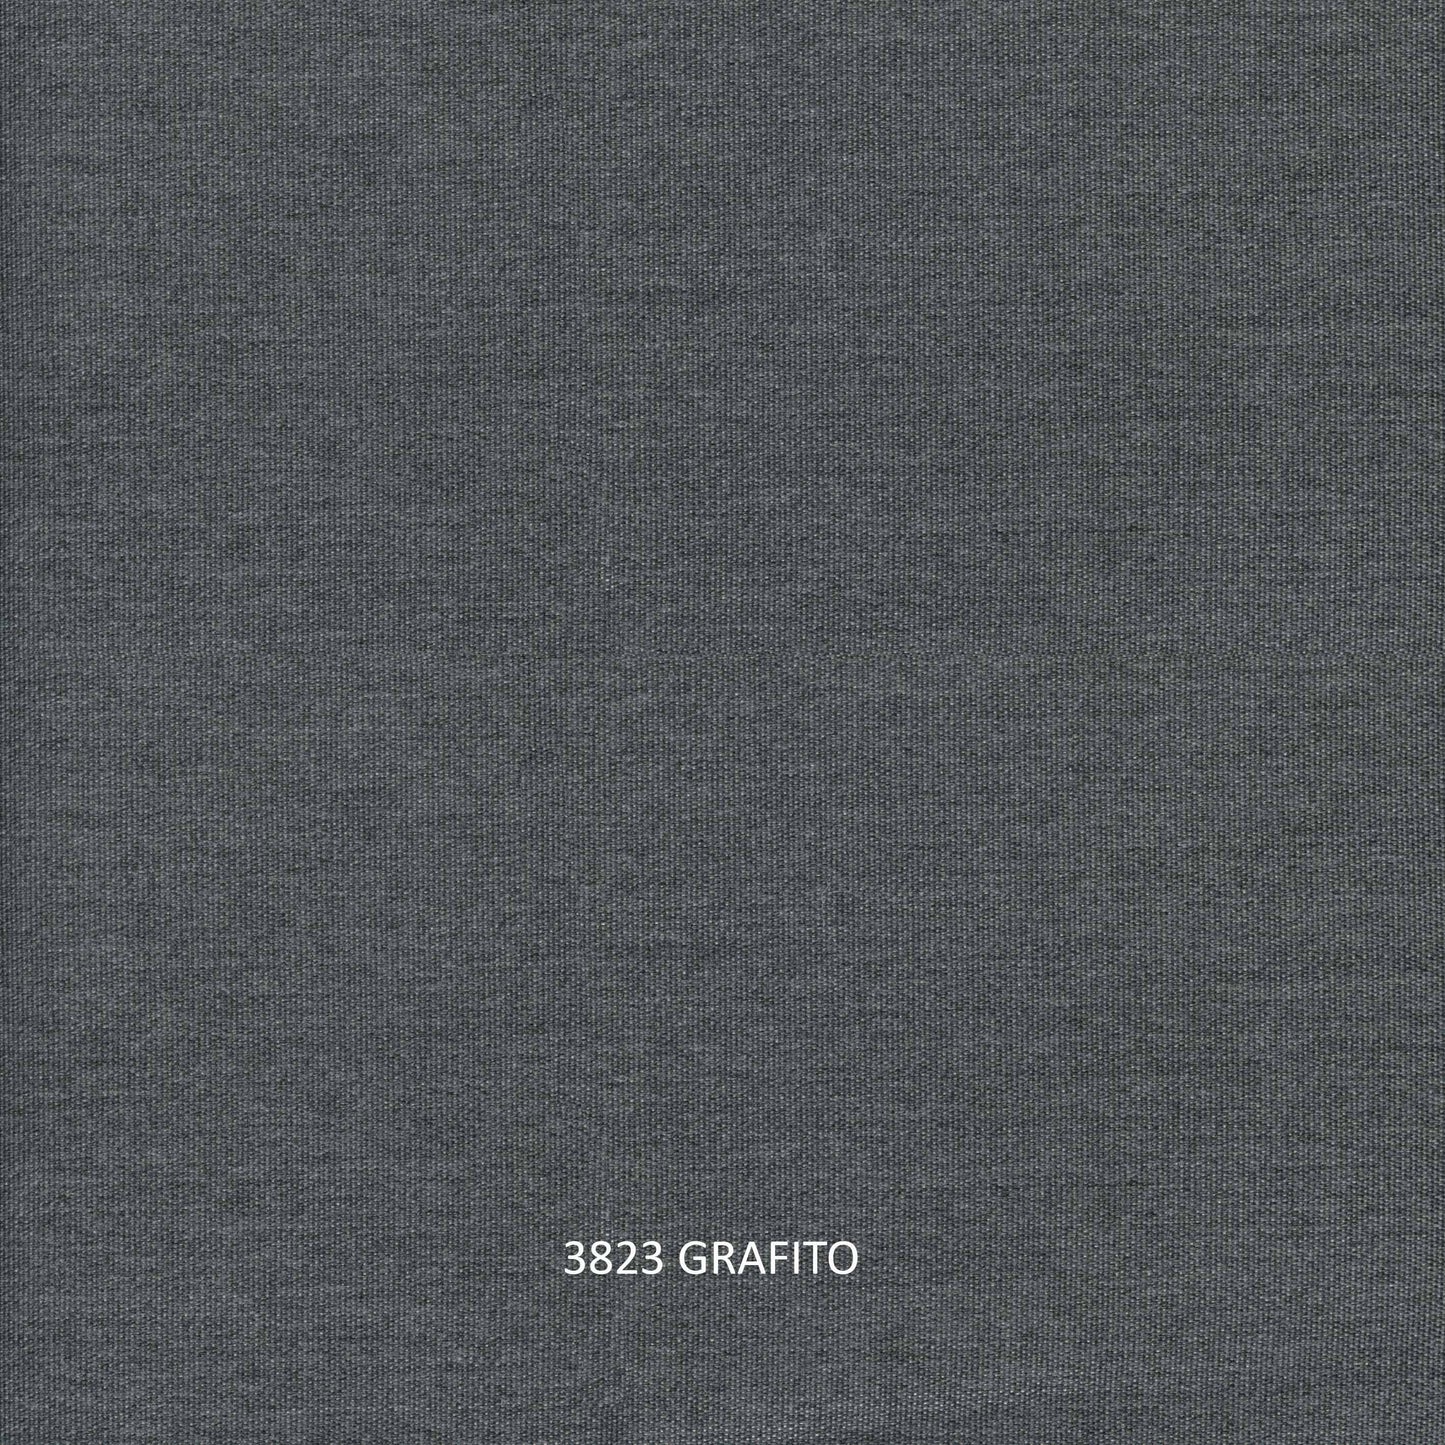 Kitt Right Love Seat - PadioLiving - Kitt Right Love Seat - Outdoor Love Seat - Dark Grey 21mm Strap / Metal-Grafito(£1317) - PadioLiving